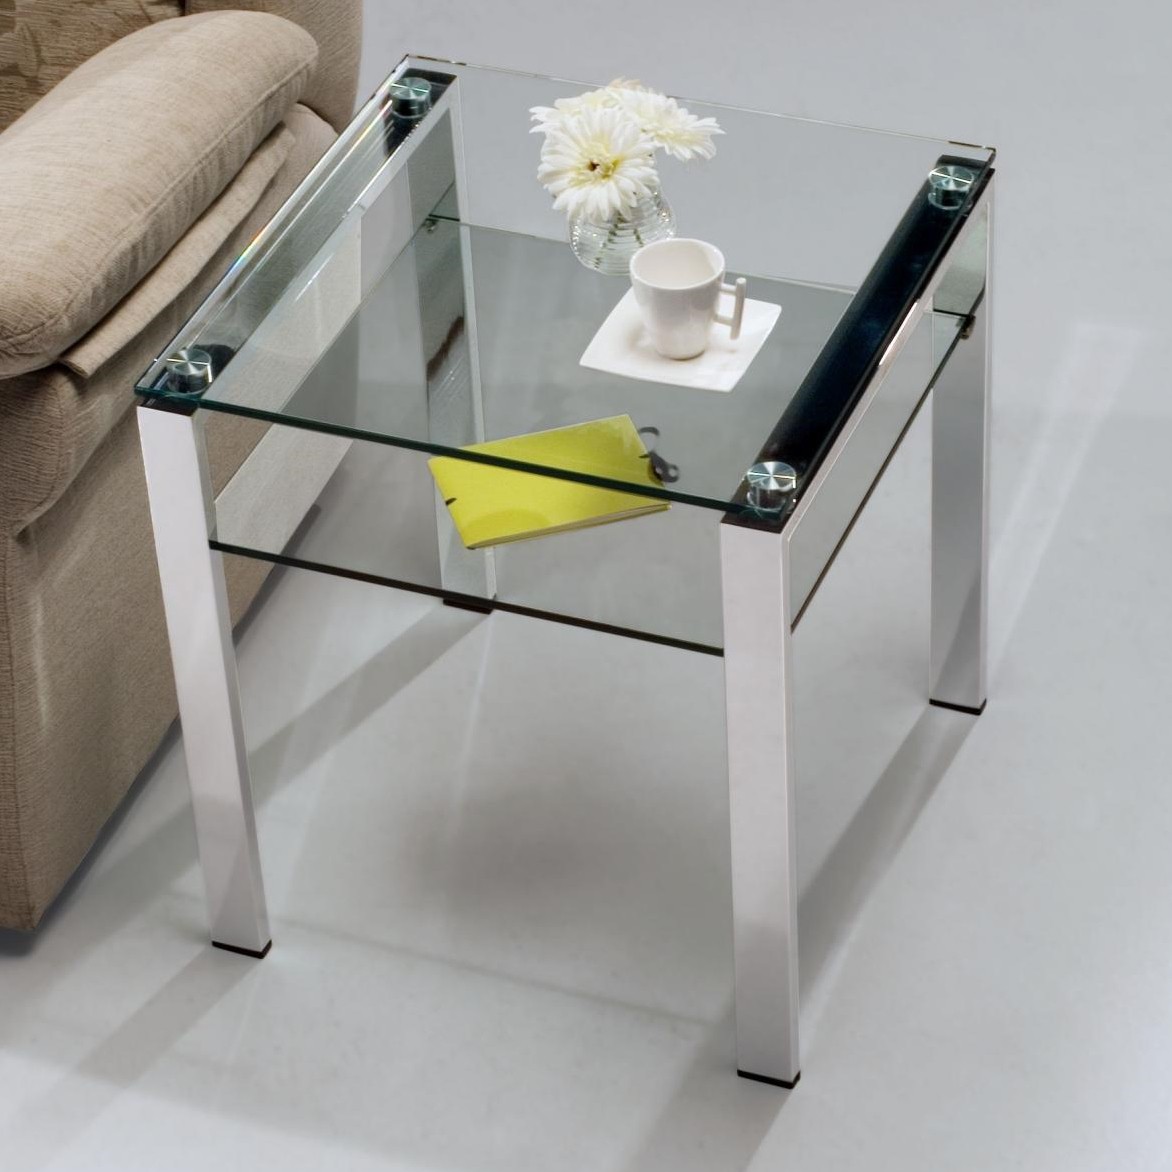 Table d'appoint en verre avec pieds chromés Aremi 55 cm